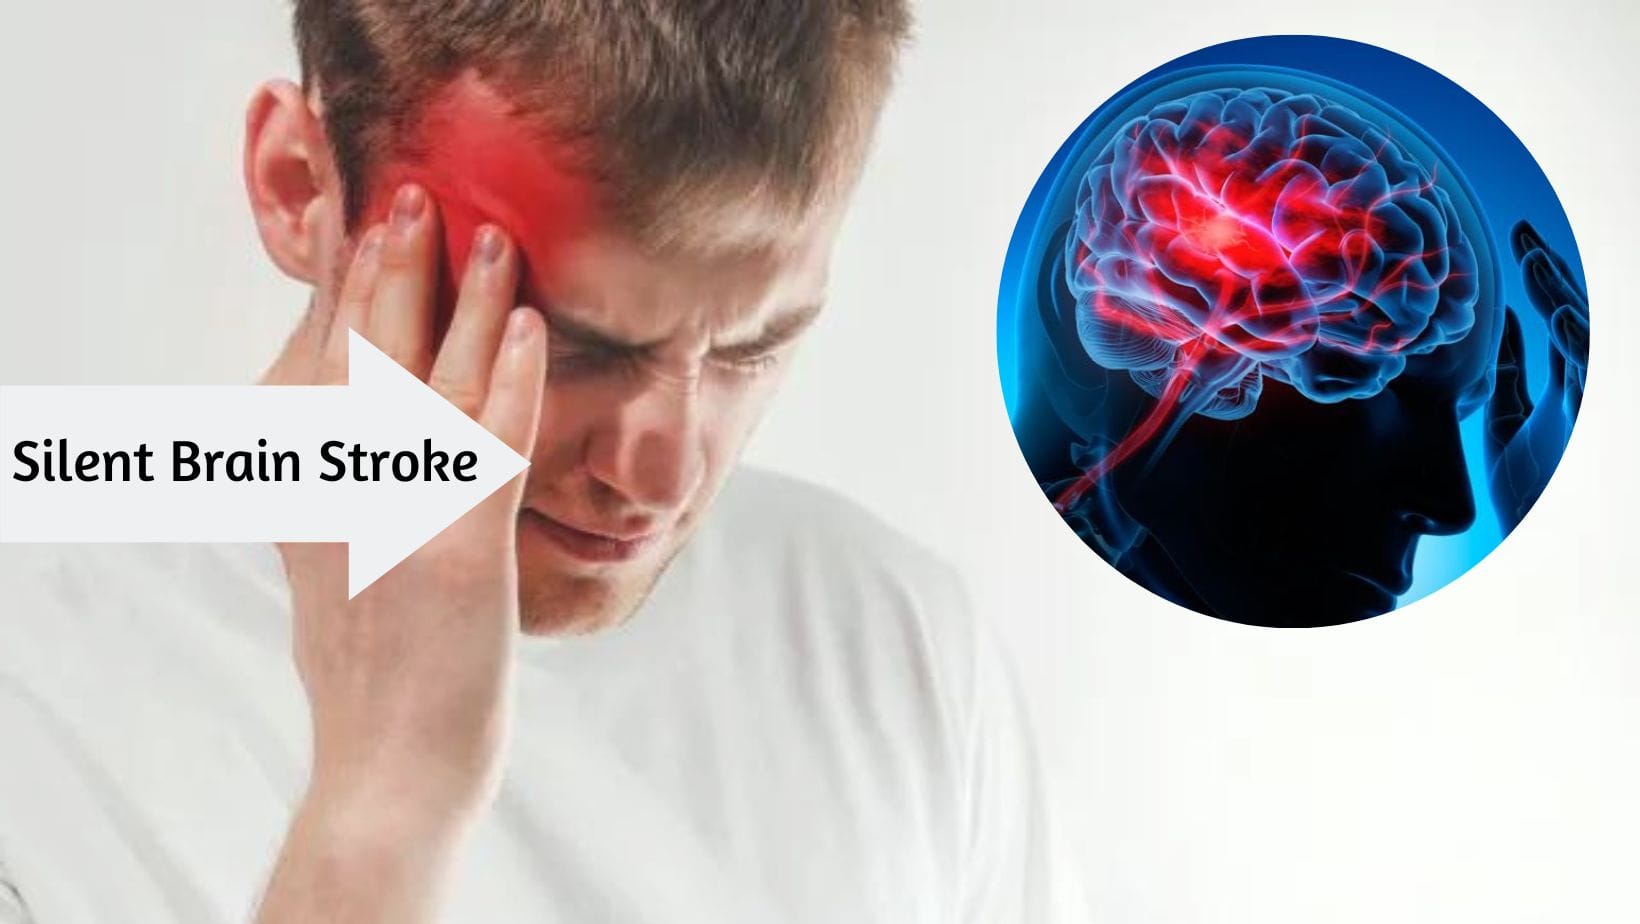 Silent Brain Stroke Symptoms: 7 Symptoms That Can Silently Kill You